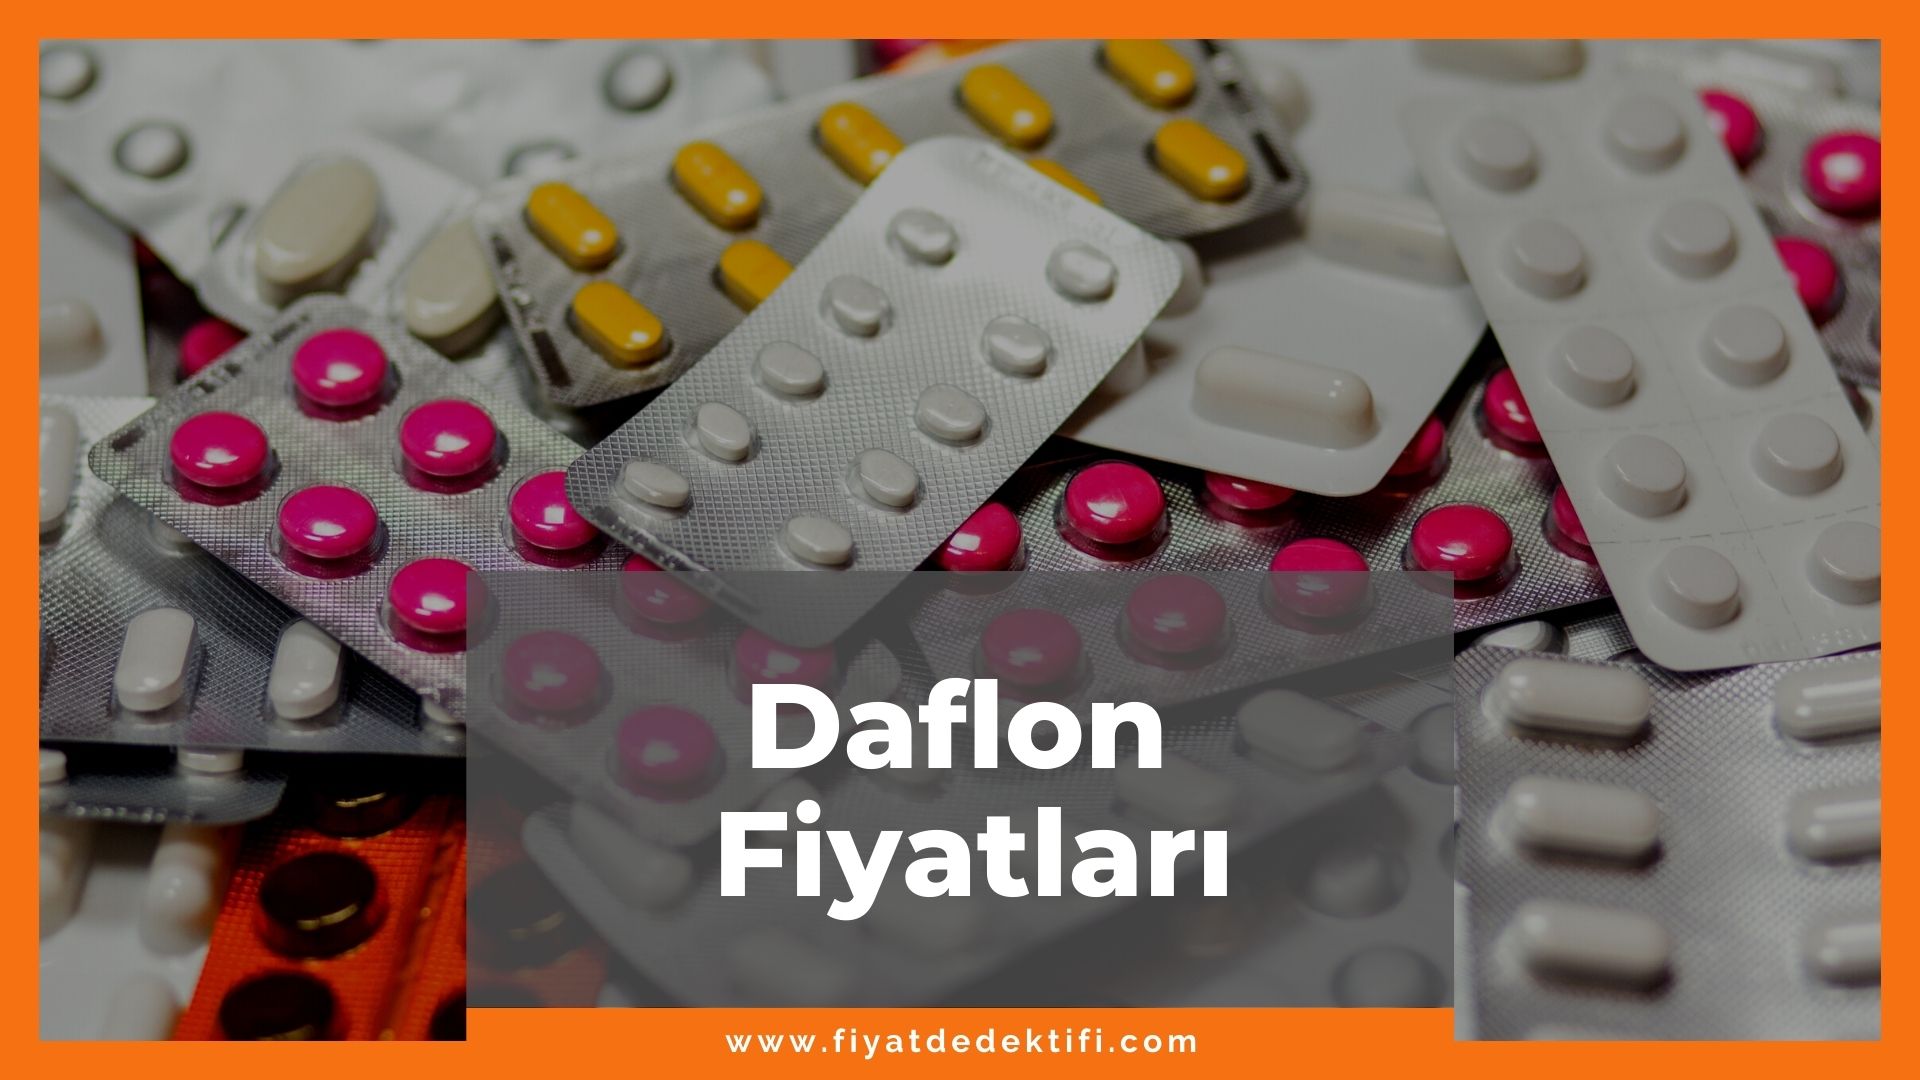 Daflon Fiyat 2021, Daflon Fiyatı, Daflon 500 mg Fiyatı, daflon zamlandı mı, daflon zamlı fiyat ne kadar oldu